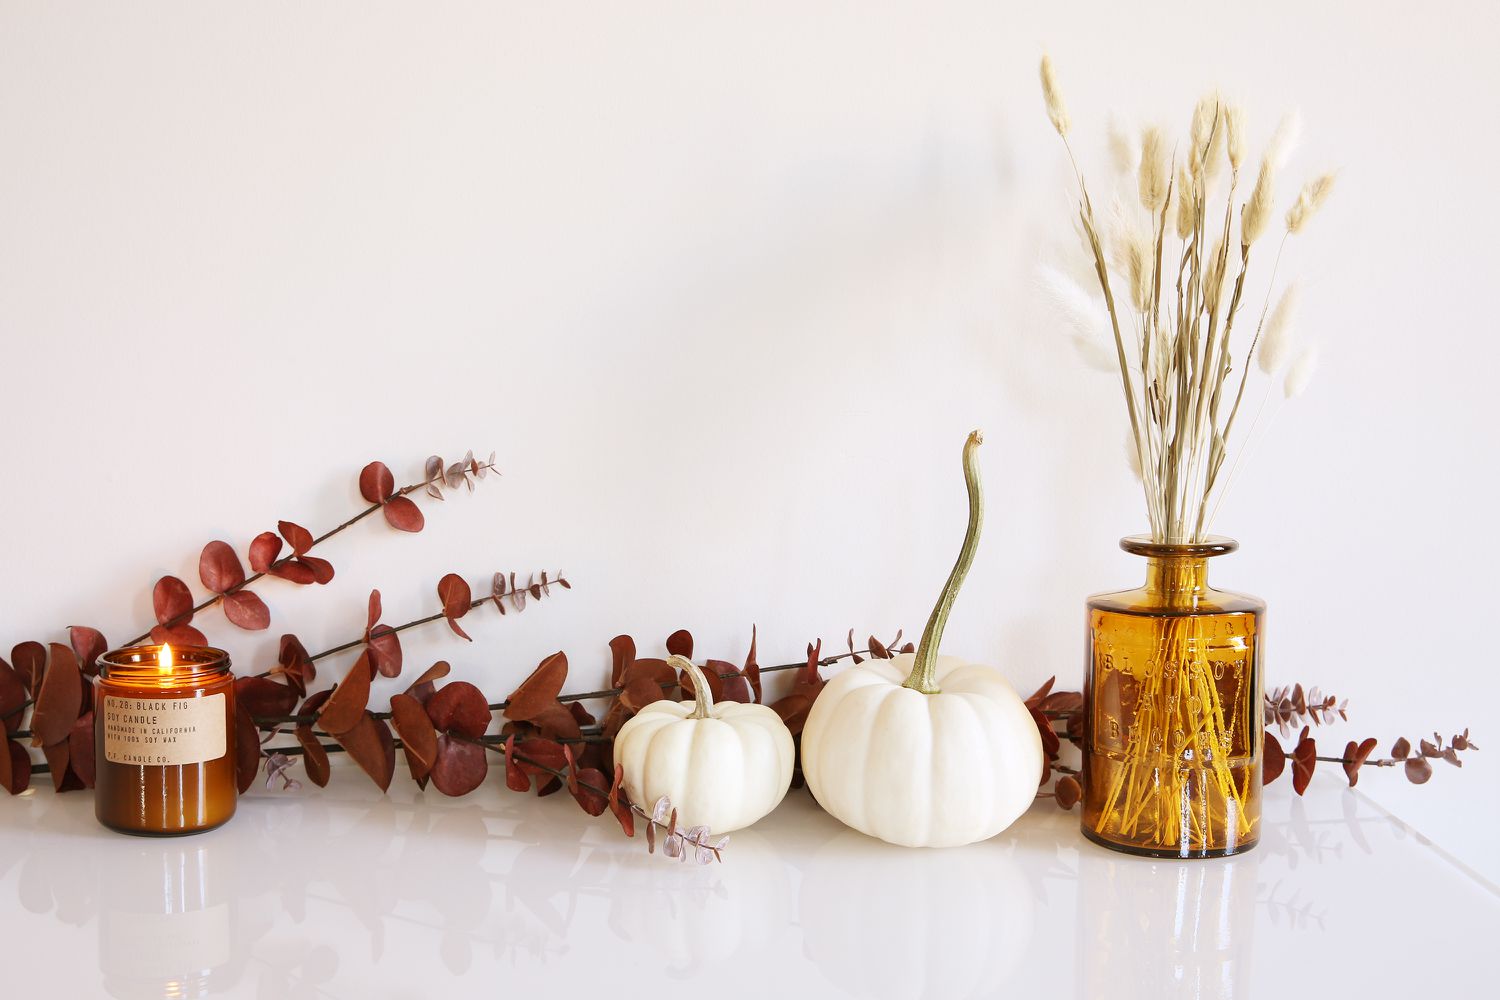 25 Dekorationsideen für den Kaminsims im Herbst, die Ihr Zuhause gemütlicher machen